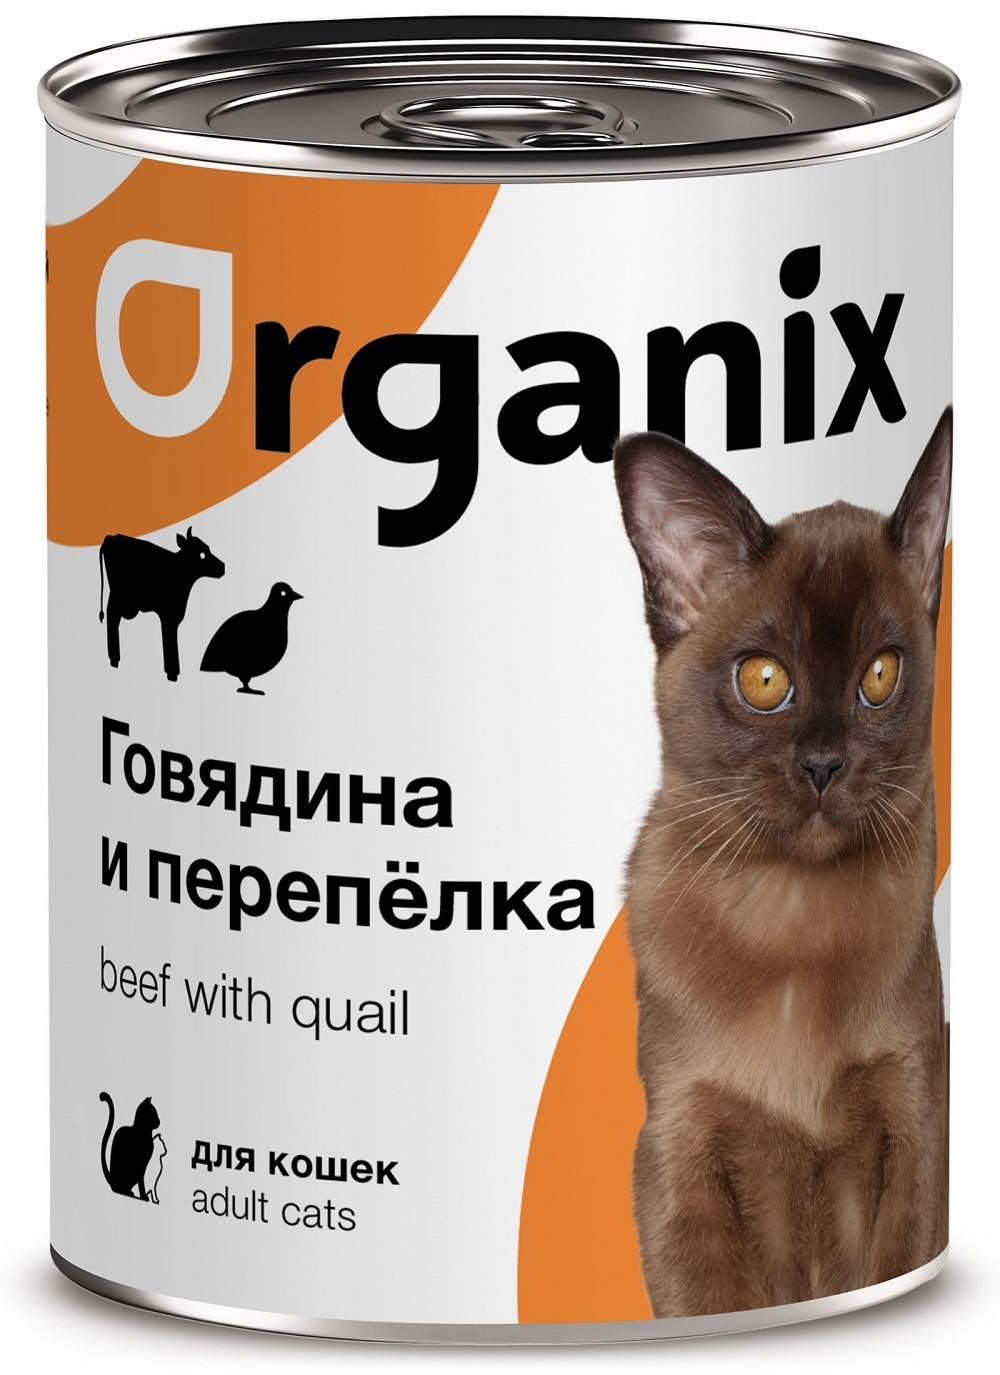 Organix консервы Organix консервы с говядиной и перепелкой для кошек (100 г) консервы biomenu sensitive для кошек мясной паштет с перепелкой 95% мясо 100 г